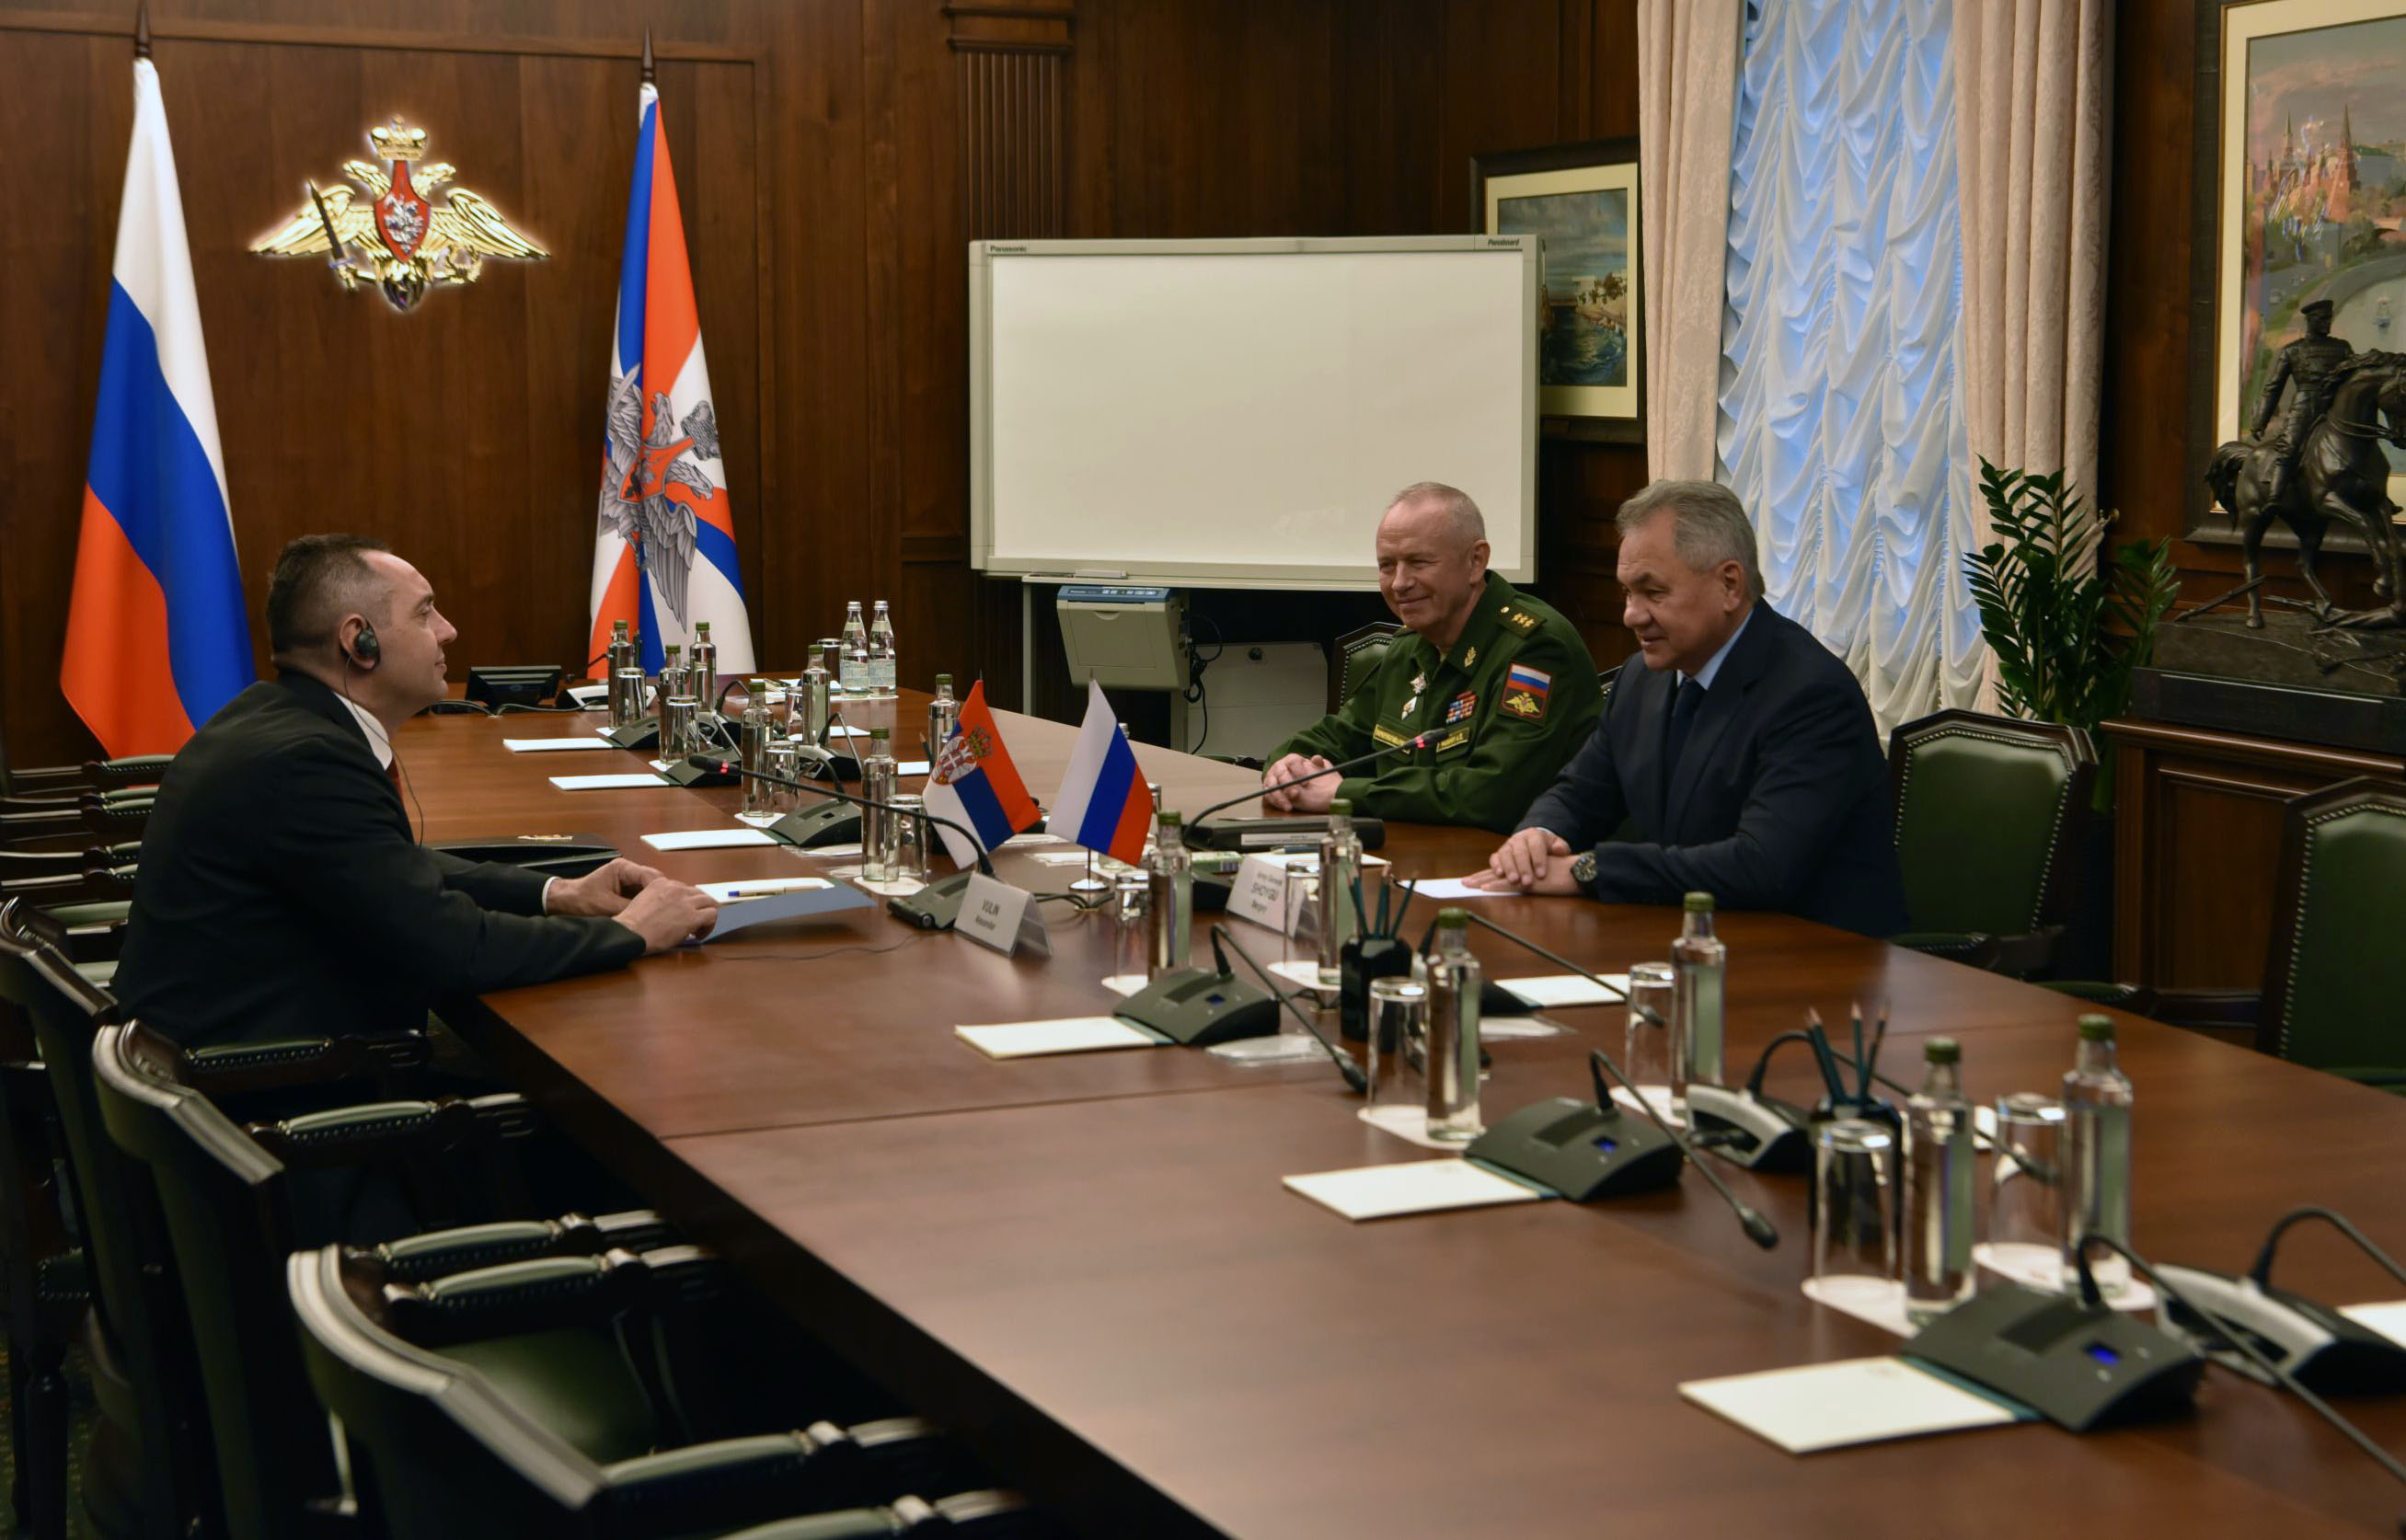 Ministri Vulin i Šojgu saglasili su se da saradnja između Srbije i Ruske Federacije nikada nije bila na ovako visokom nivou